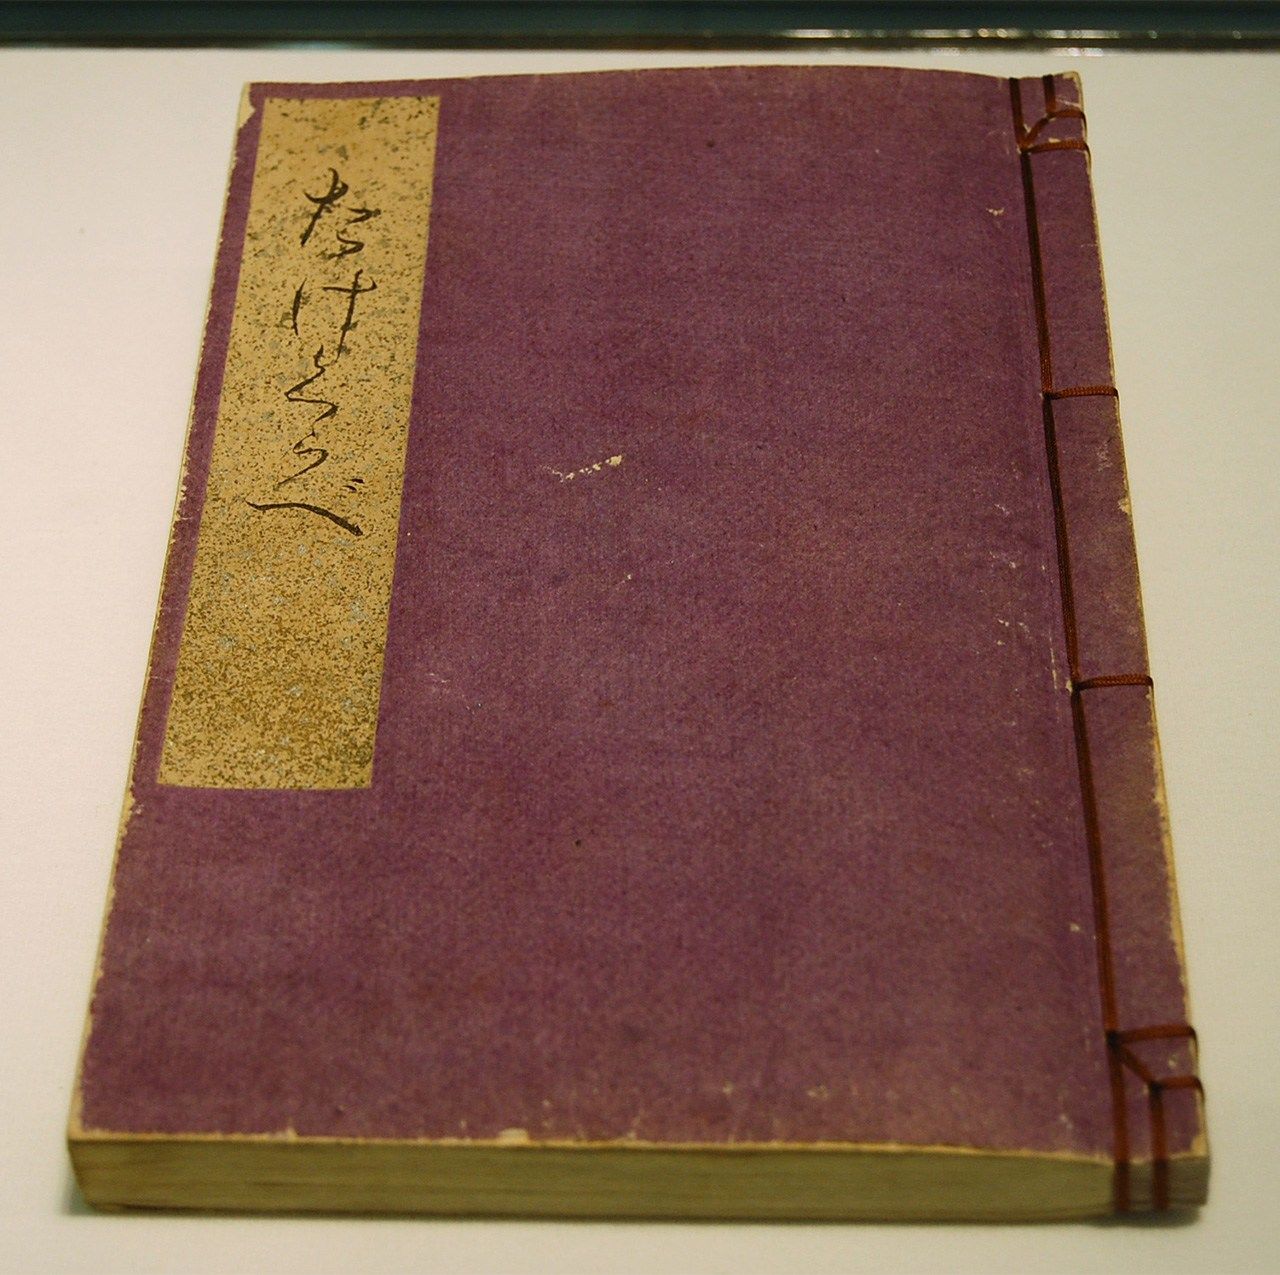 El manuscrito de Takekurabe (Crecer) se subastó por 21 millones de yenes en 2019. (Jiji Press)